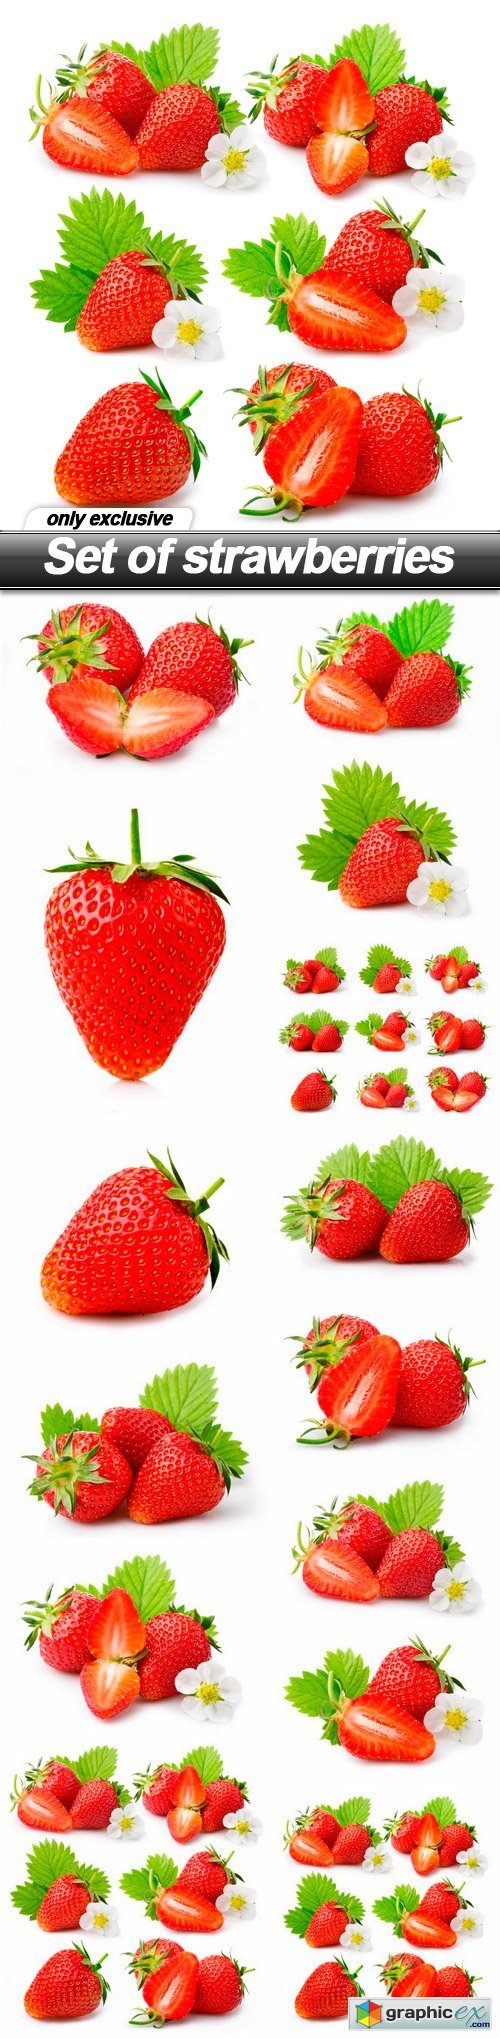 Set of strawberries - 14 UHQ JPEG